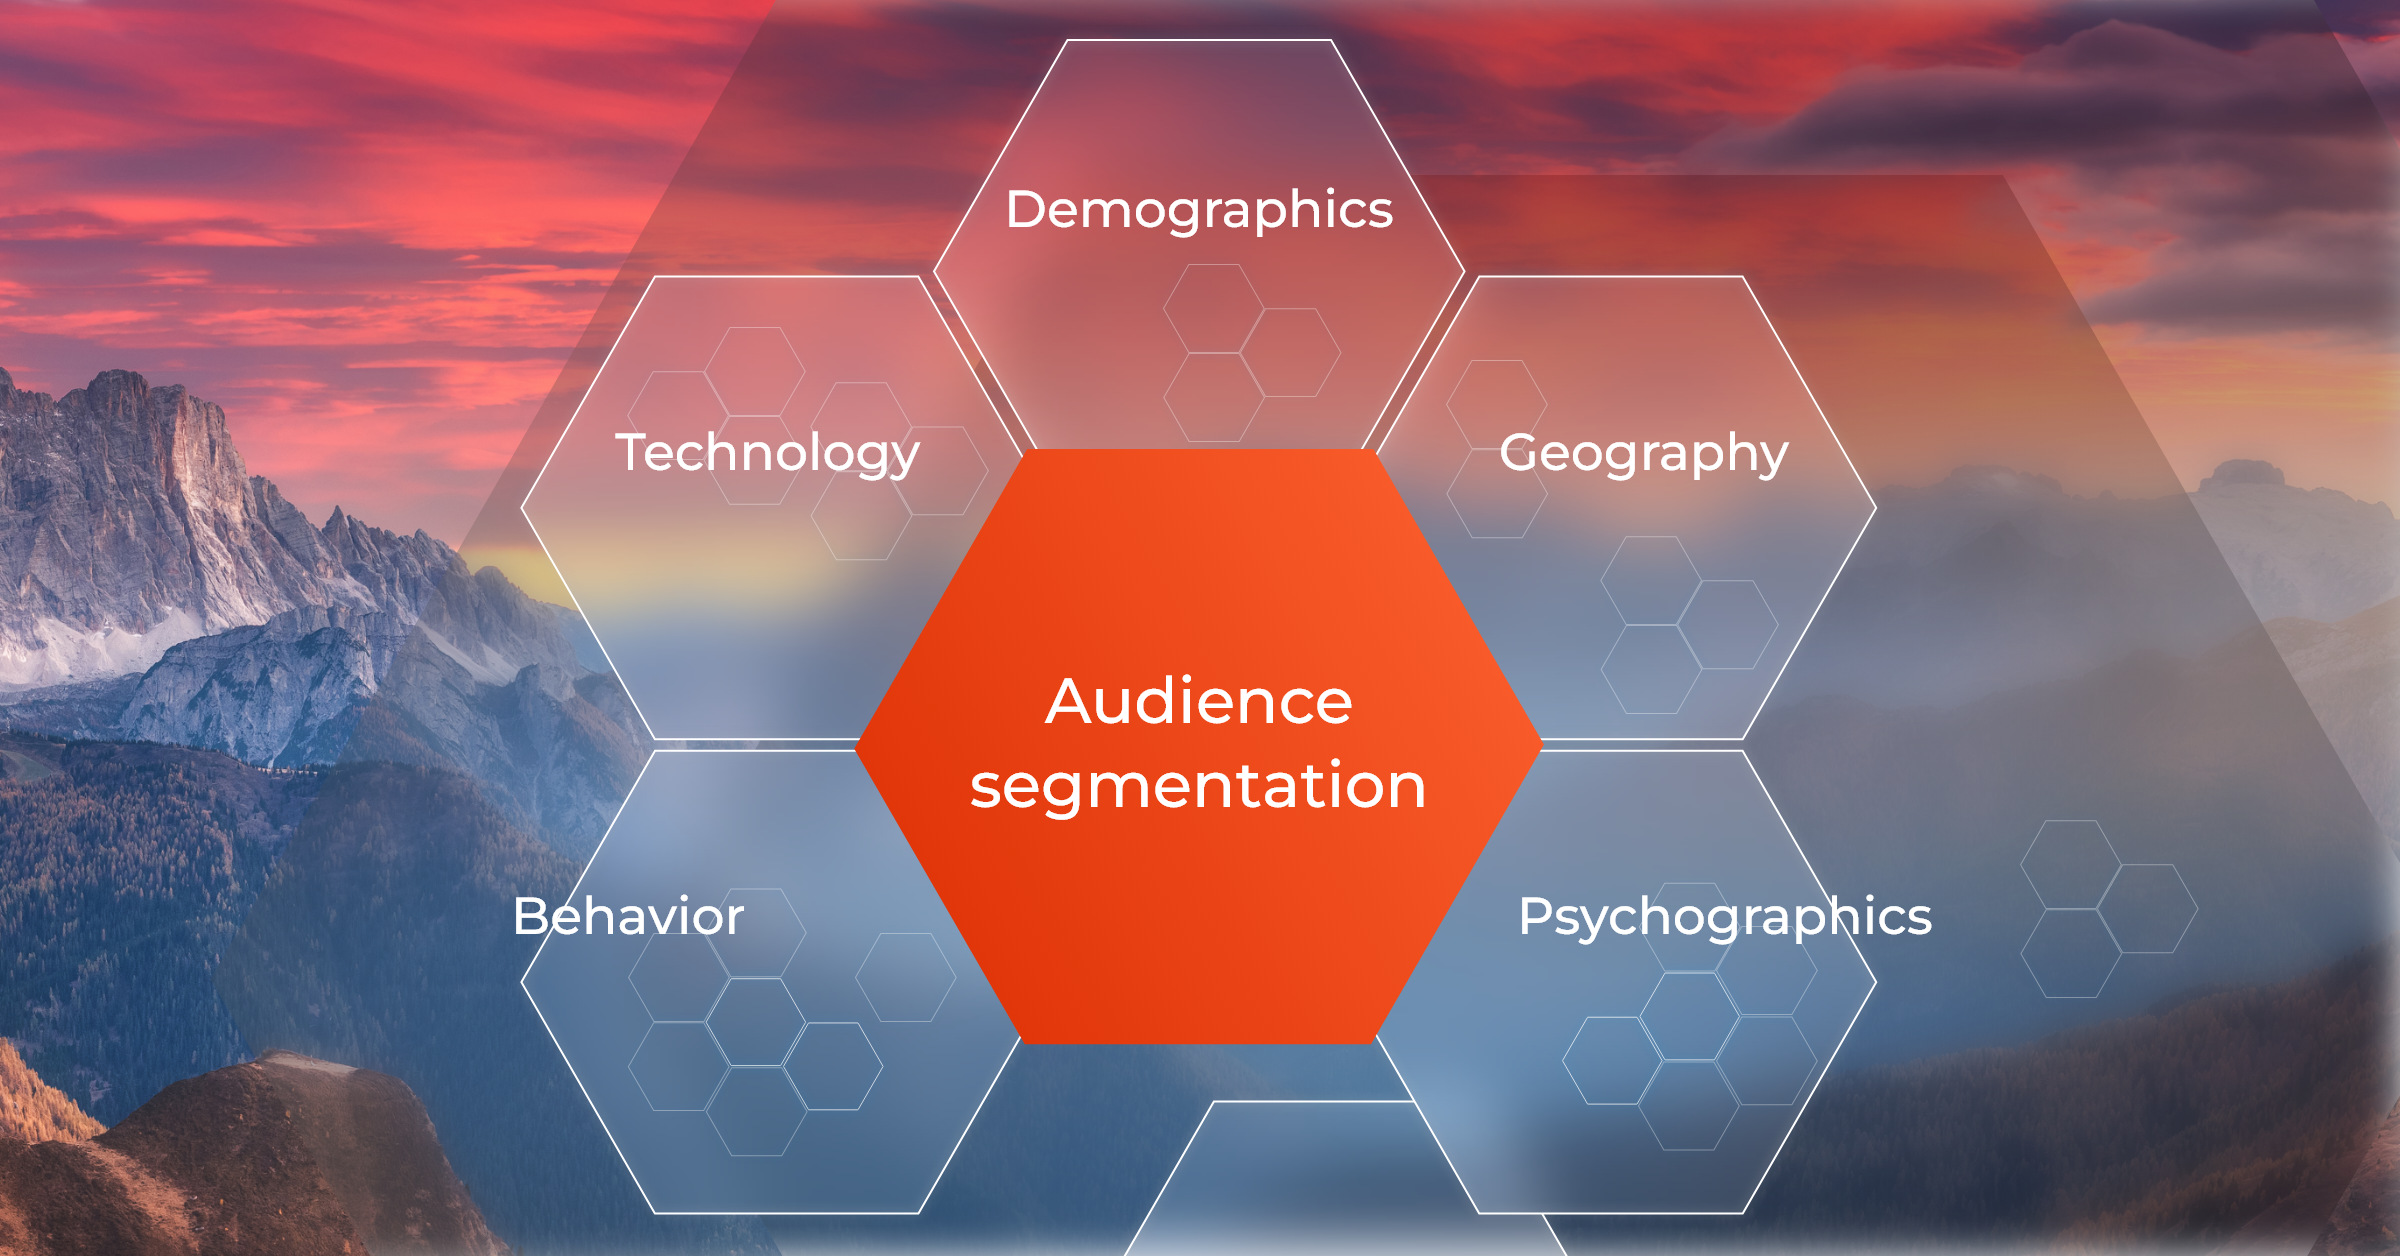 Target audiences segmentation